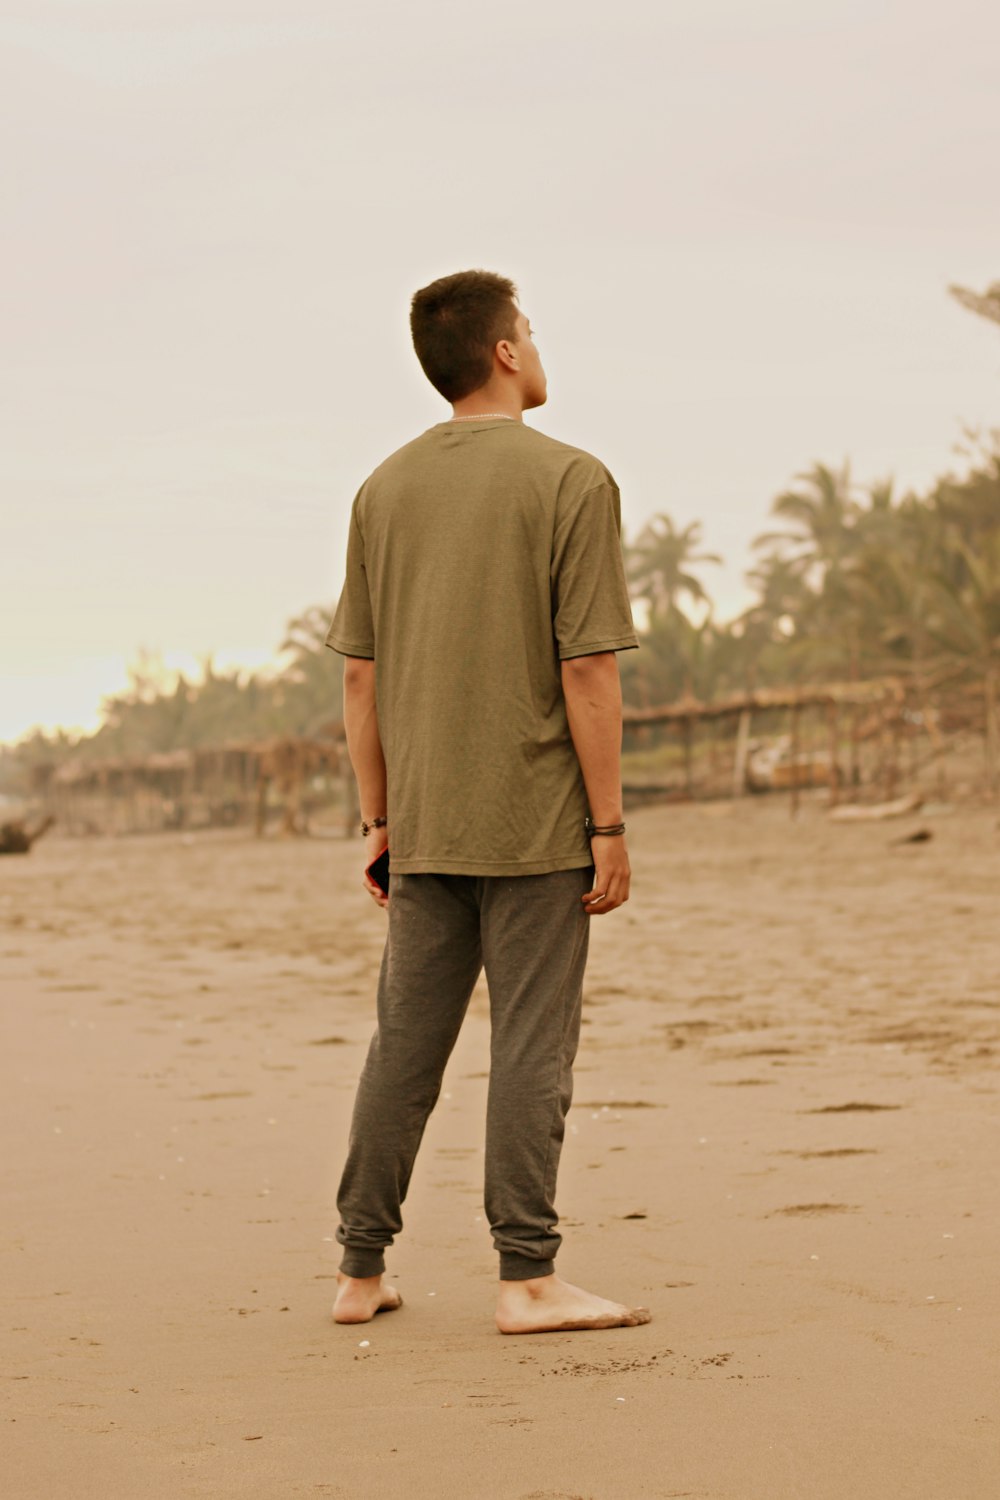 Mann in braunem T-Shirt und schwarzer Hose, der tagsüber auf braunem Sand läuft